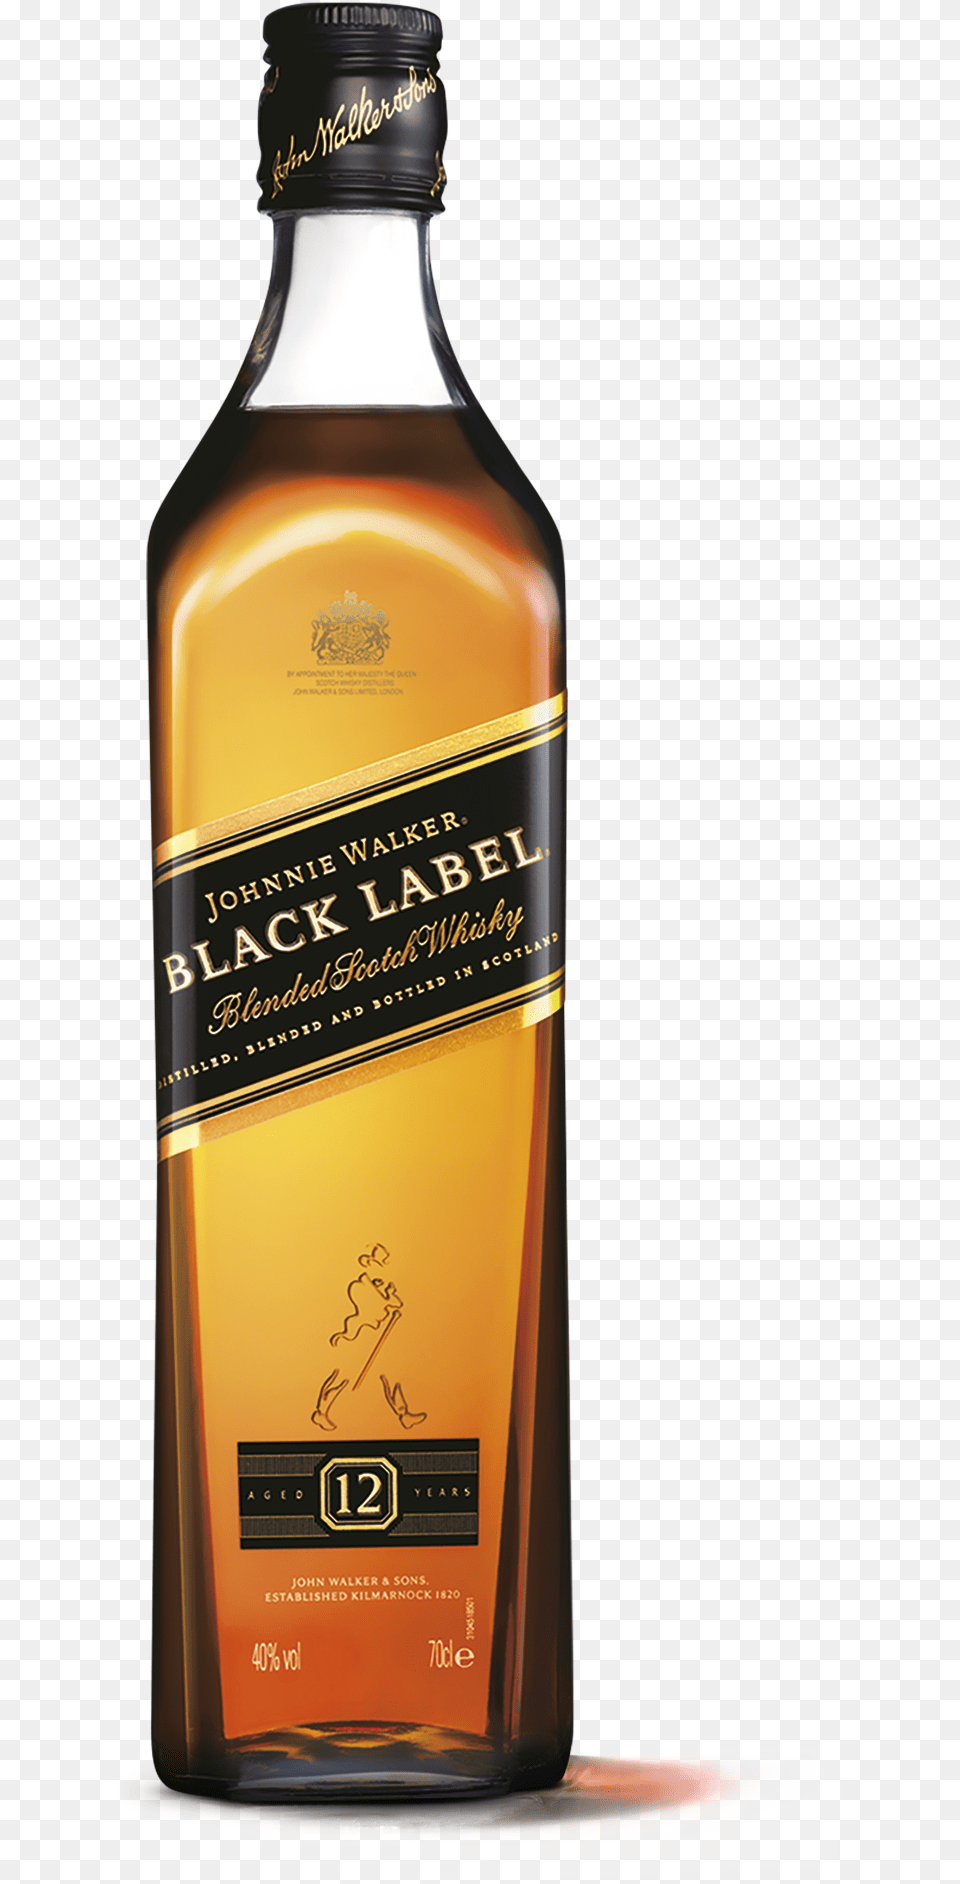 Johnnie Walker Is The World39s Number One Scotch Whisky Jwalker Johnnie Walker Black Label, Alcohol, Beverage, Liquor, Beer Png